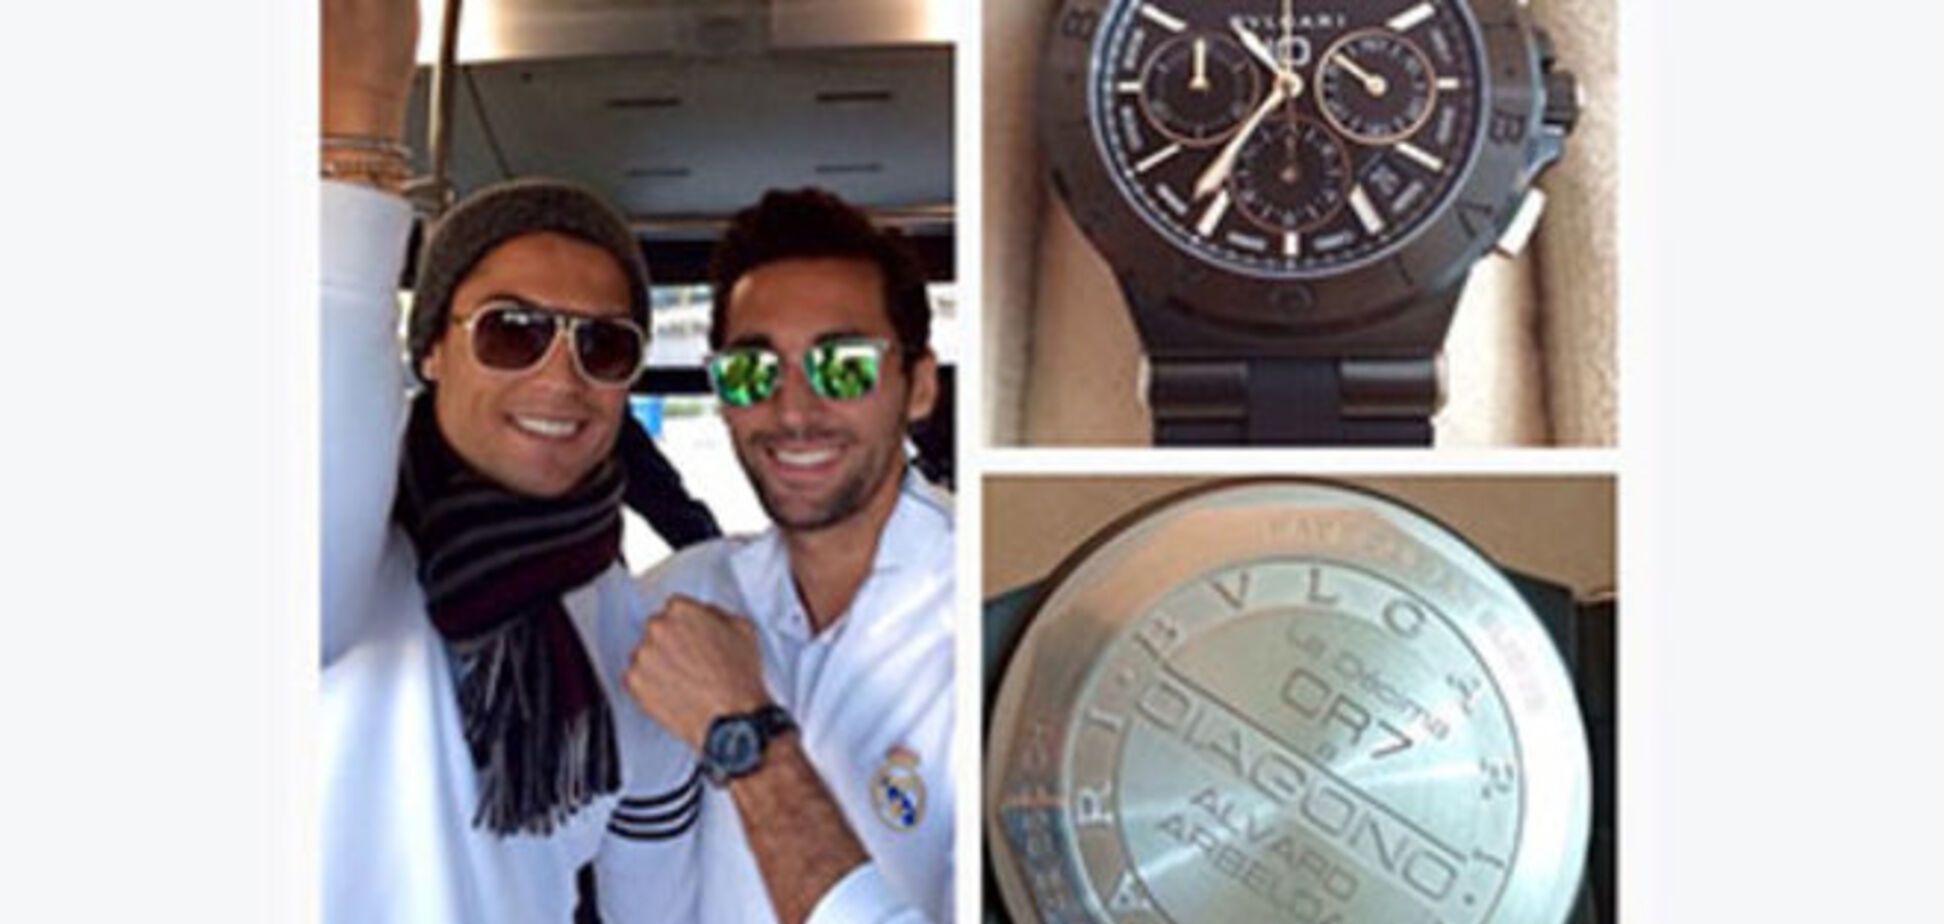 Криштиану Роналду подарил одноклубникам часы на 150 тыс. евро